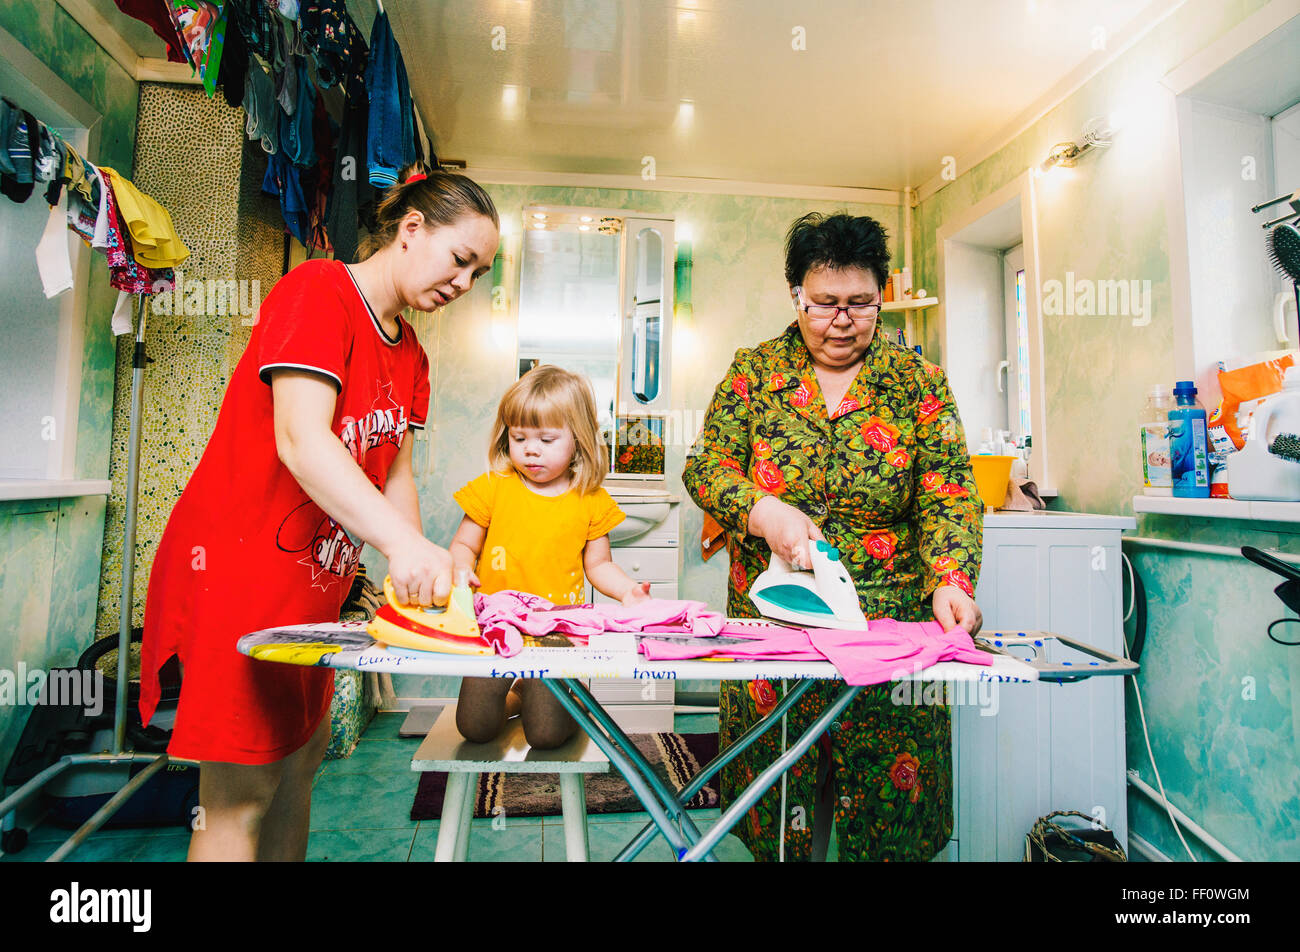 Caucasian women ironing laundry Stock Photo